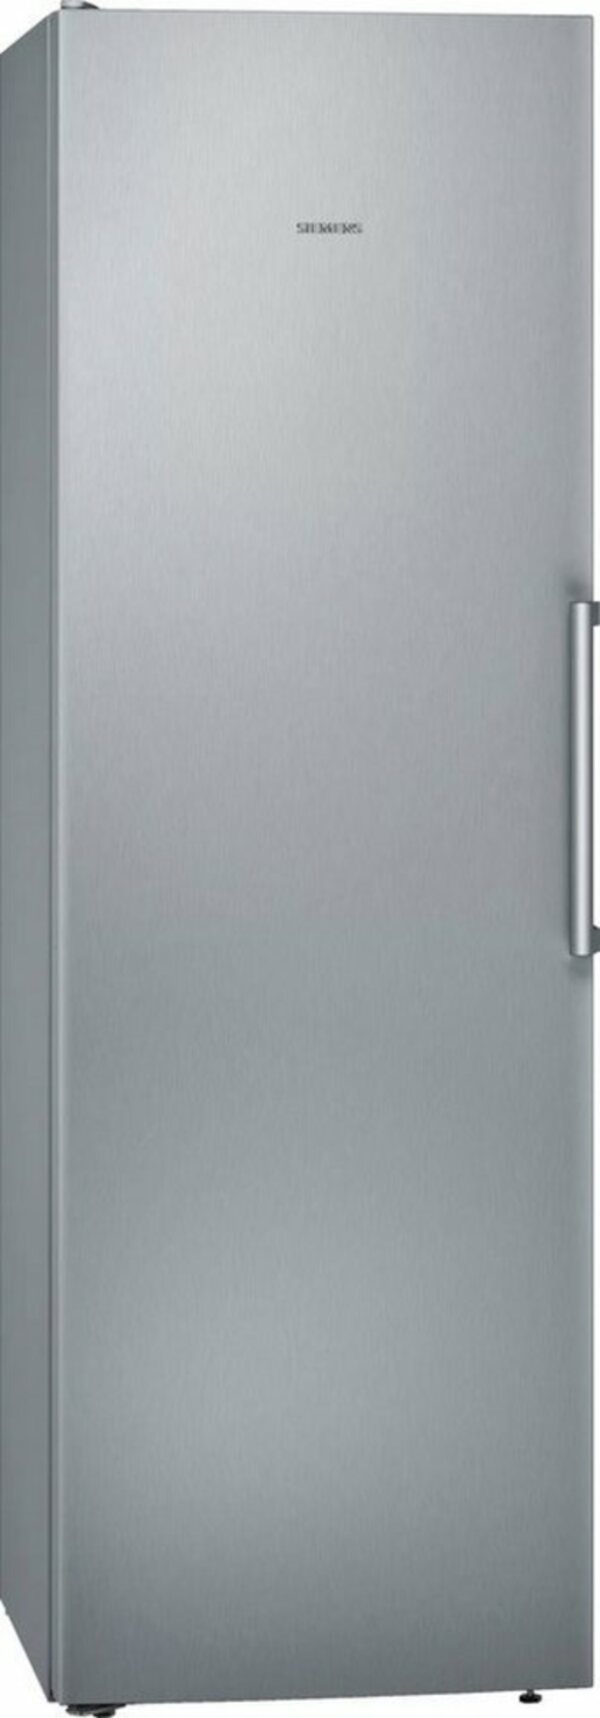 Bild 1 von SIEMENS Kühlschrank iQ300 KS36VVIEP, 186 cm hoch, 60 cm breit